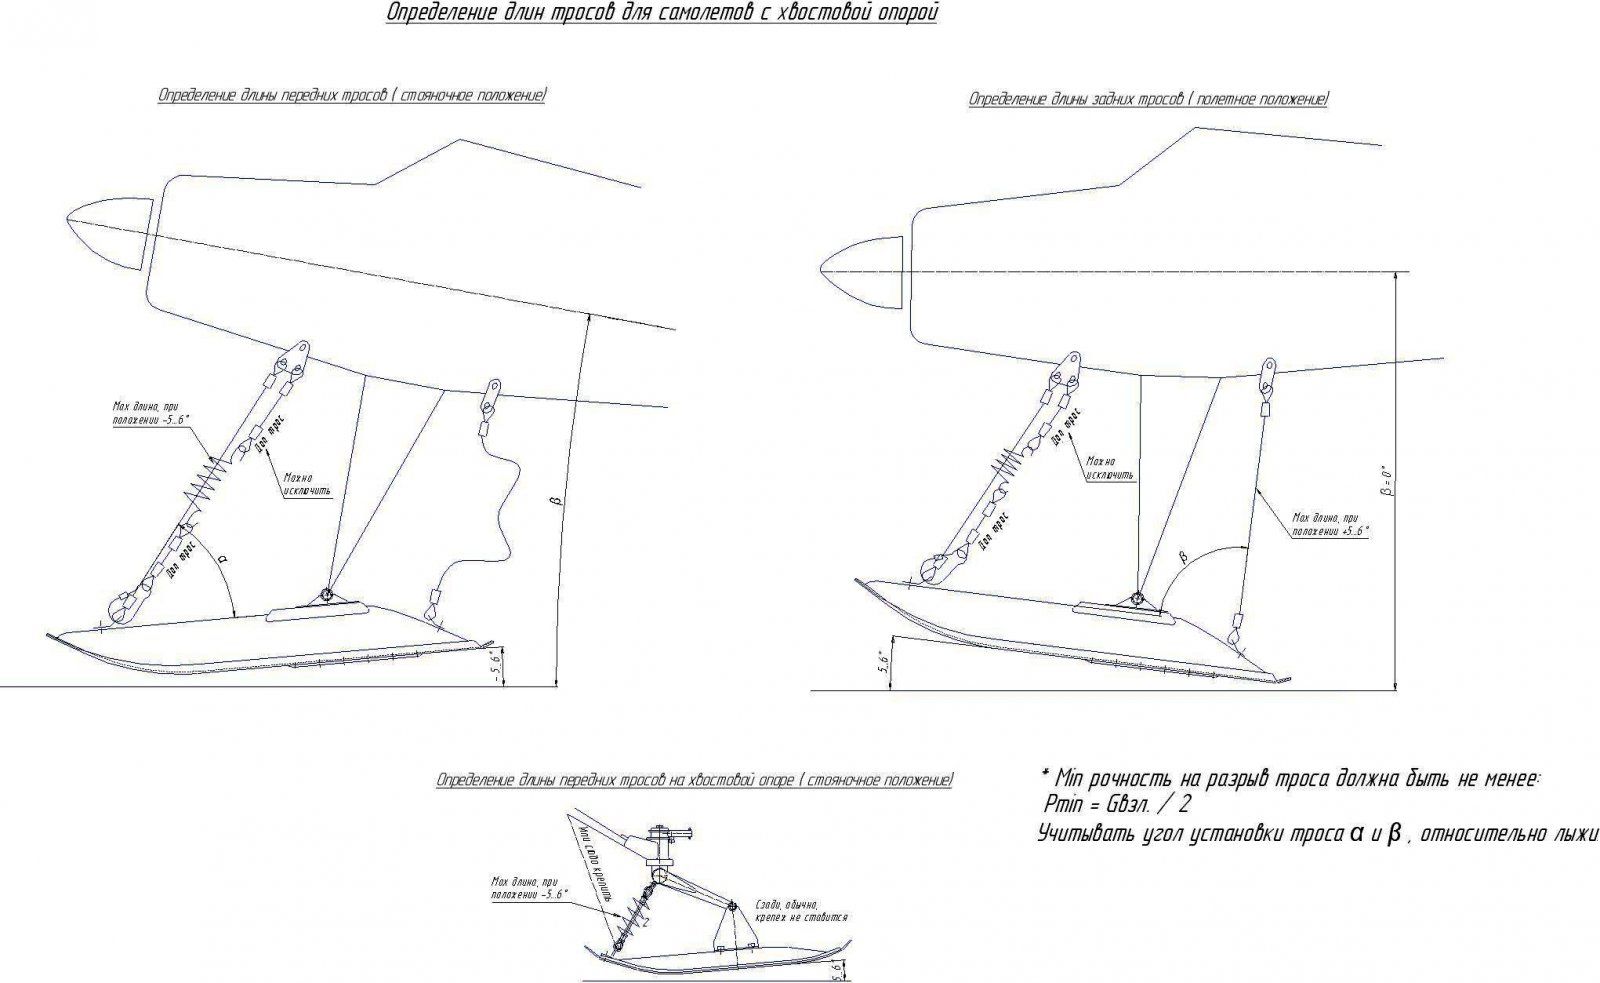 Определение параметров тросов на лыжах , у самолетов с хвостовой опорой.jpg